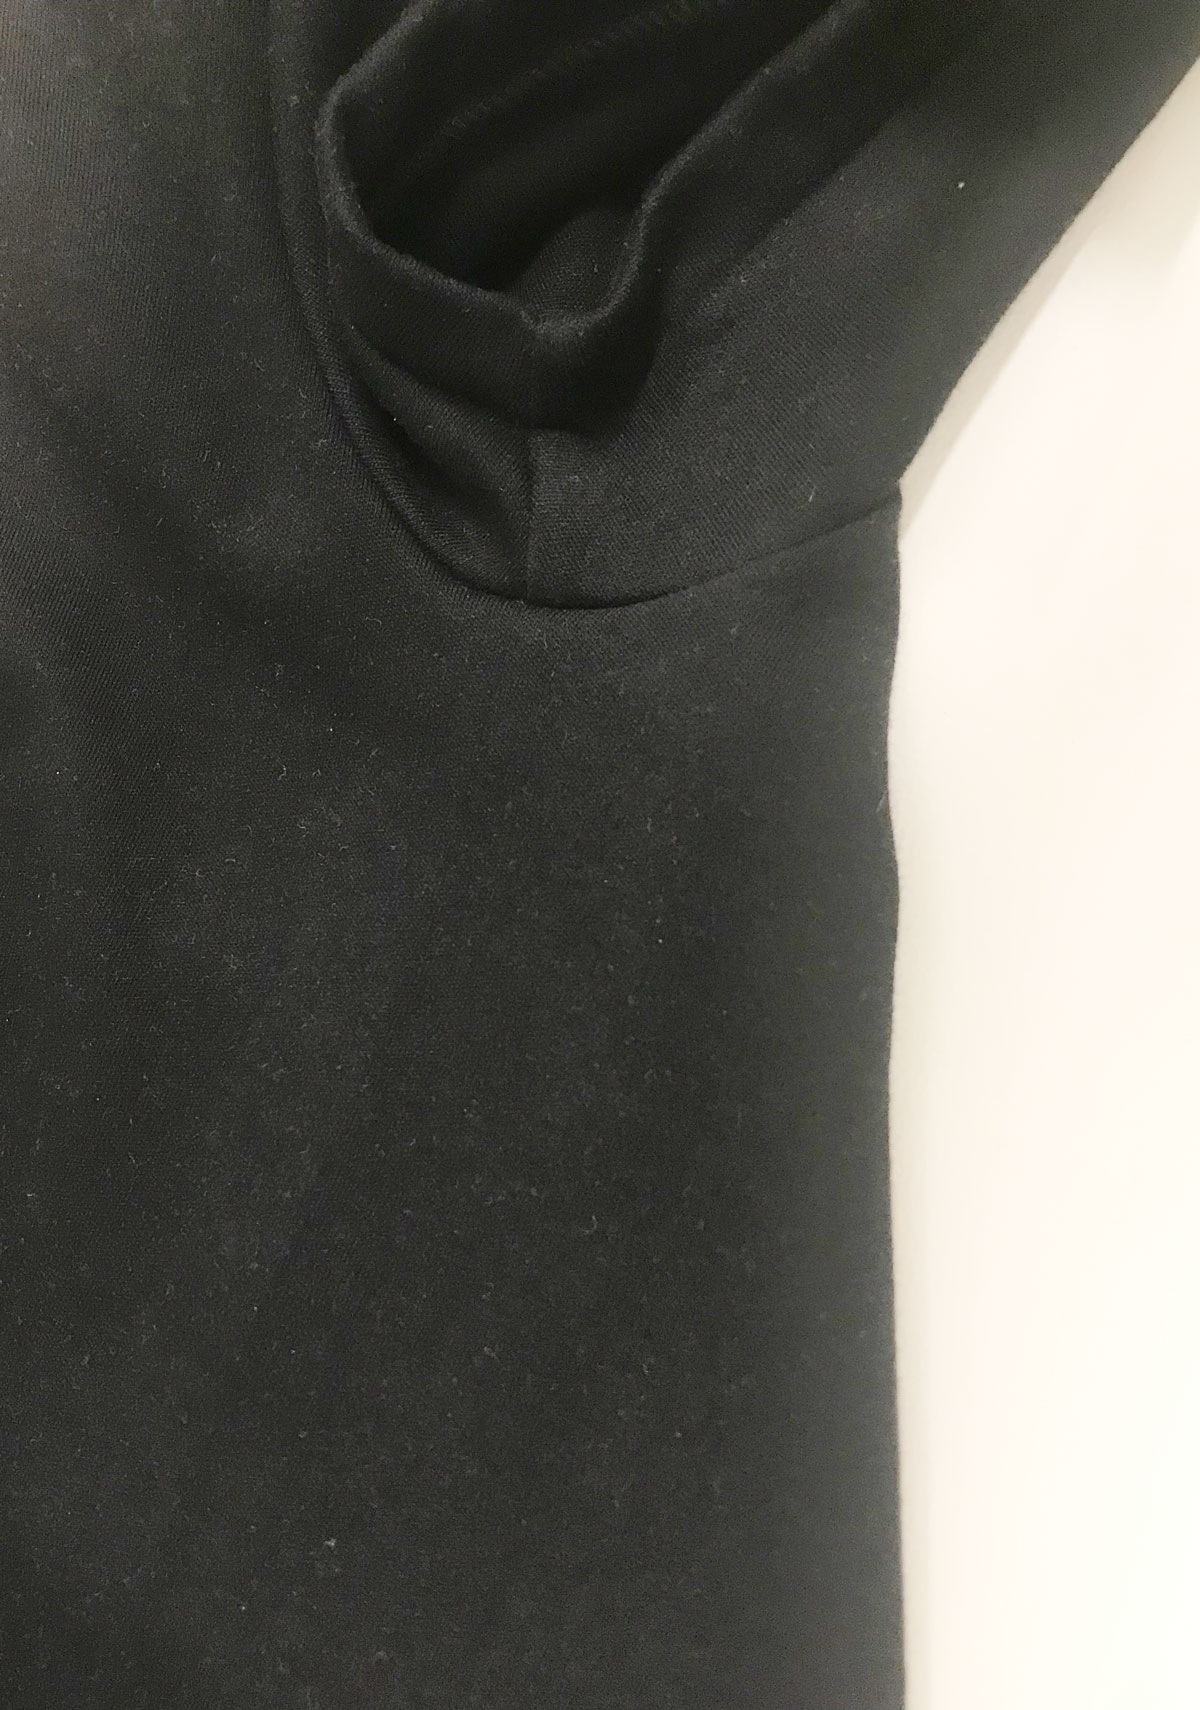 ixc.  (イクスシー) -  オリジナルルームウェア 長袖Tシャツ (MEN) ブラック